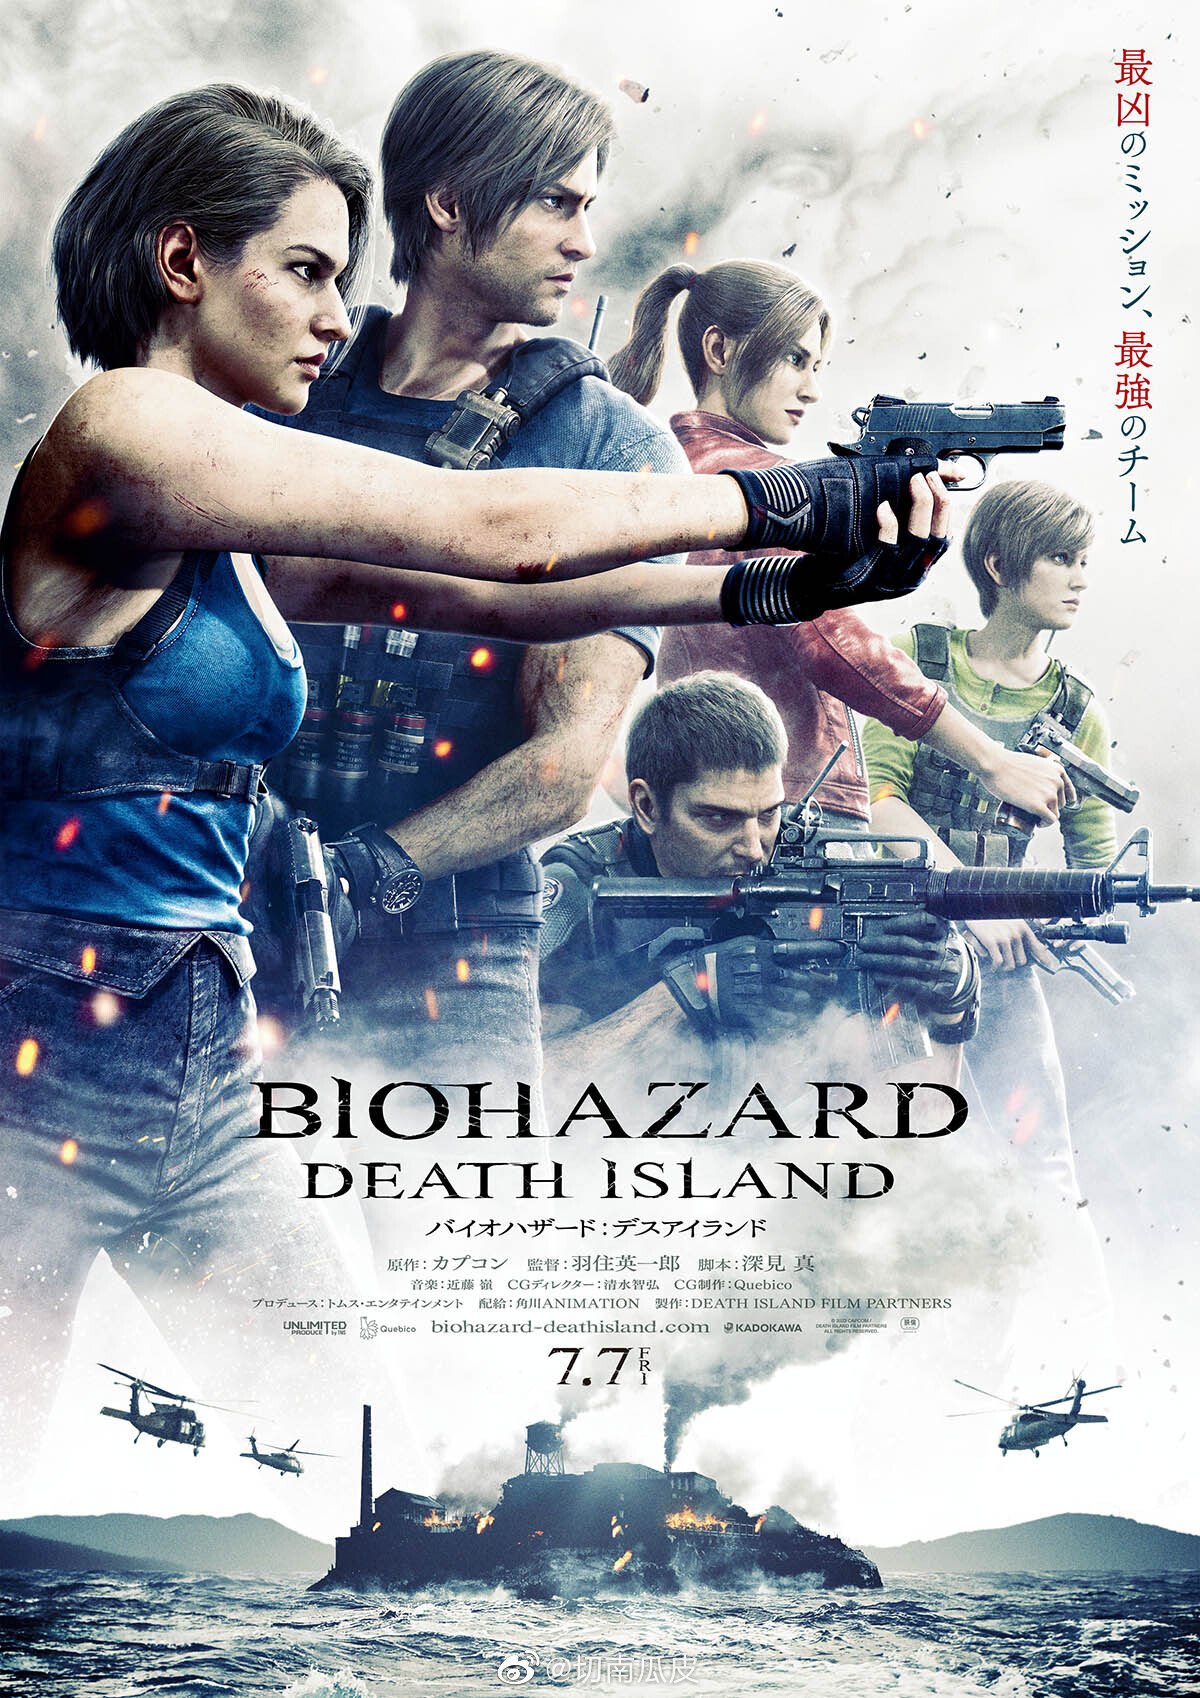 Resident Evil:Ilha Da Morte pt1 #filmes #series #residentevil #animaca